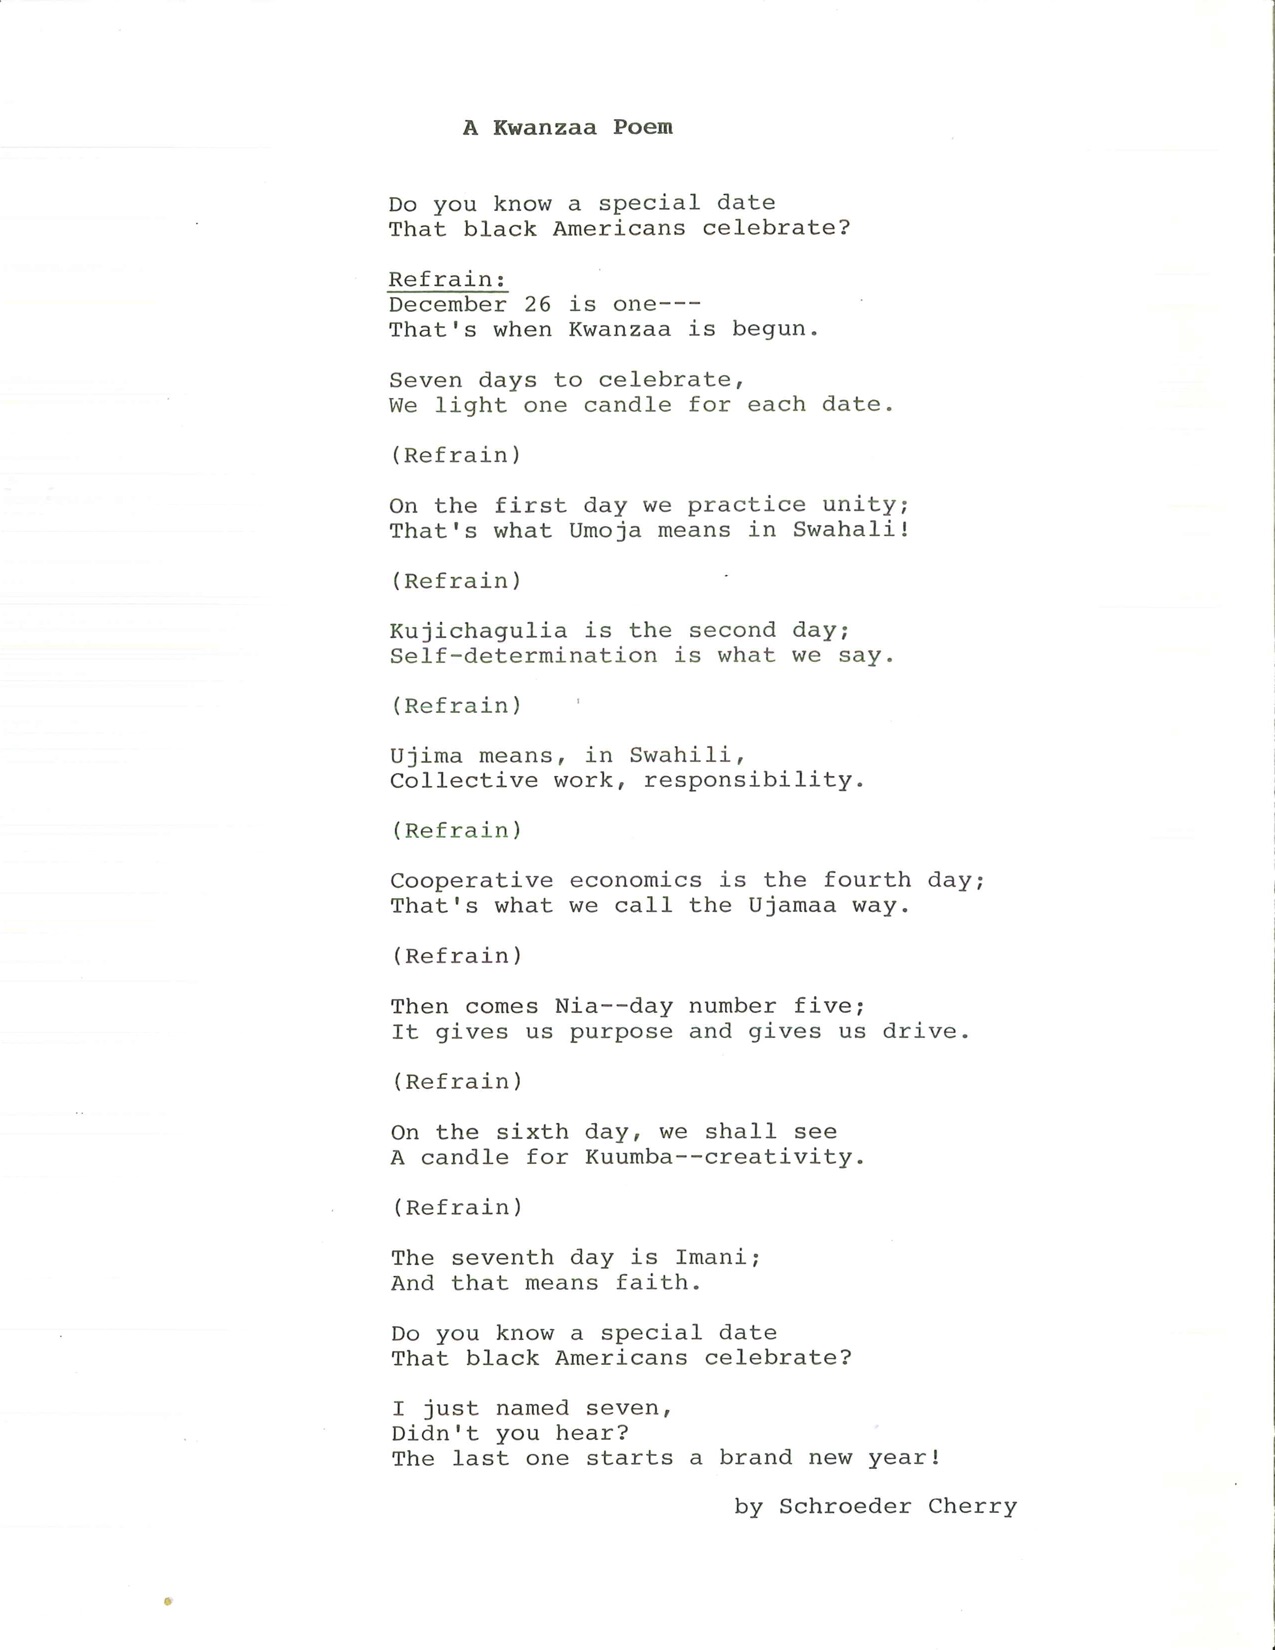 A poem written by Schroeder Cherry about Kwanzaa. 